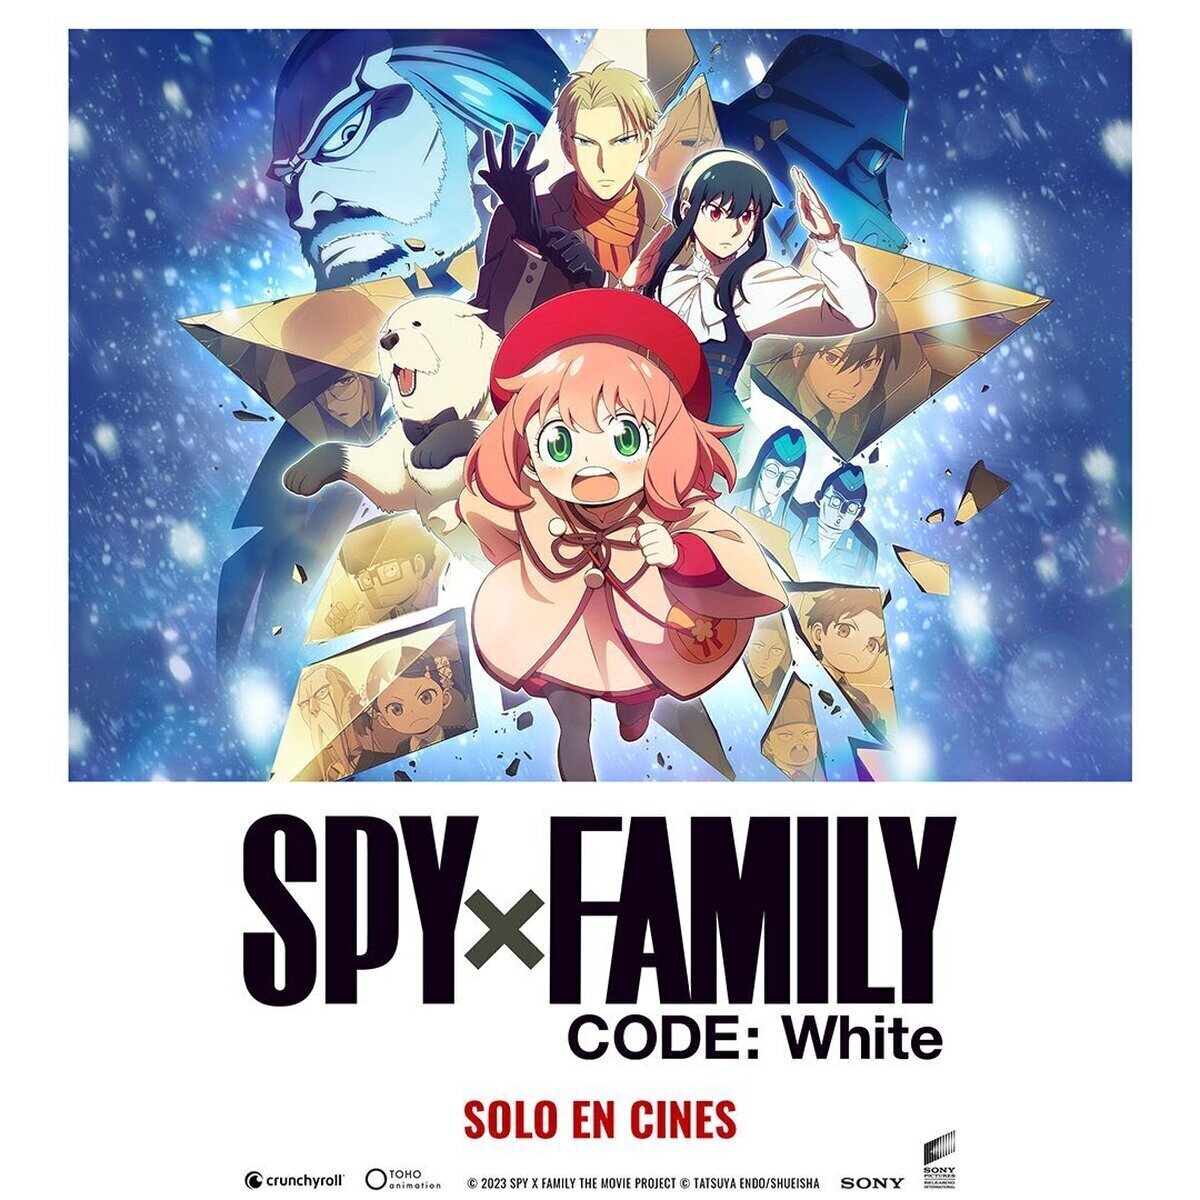 ¡La película ‘SPY x FAMILY CODE: White’ llegará a cines españoles el 19 de abril!